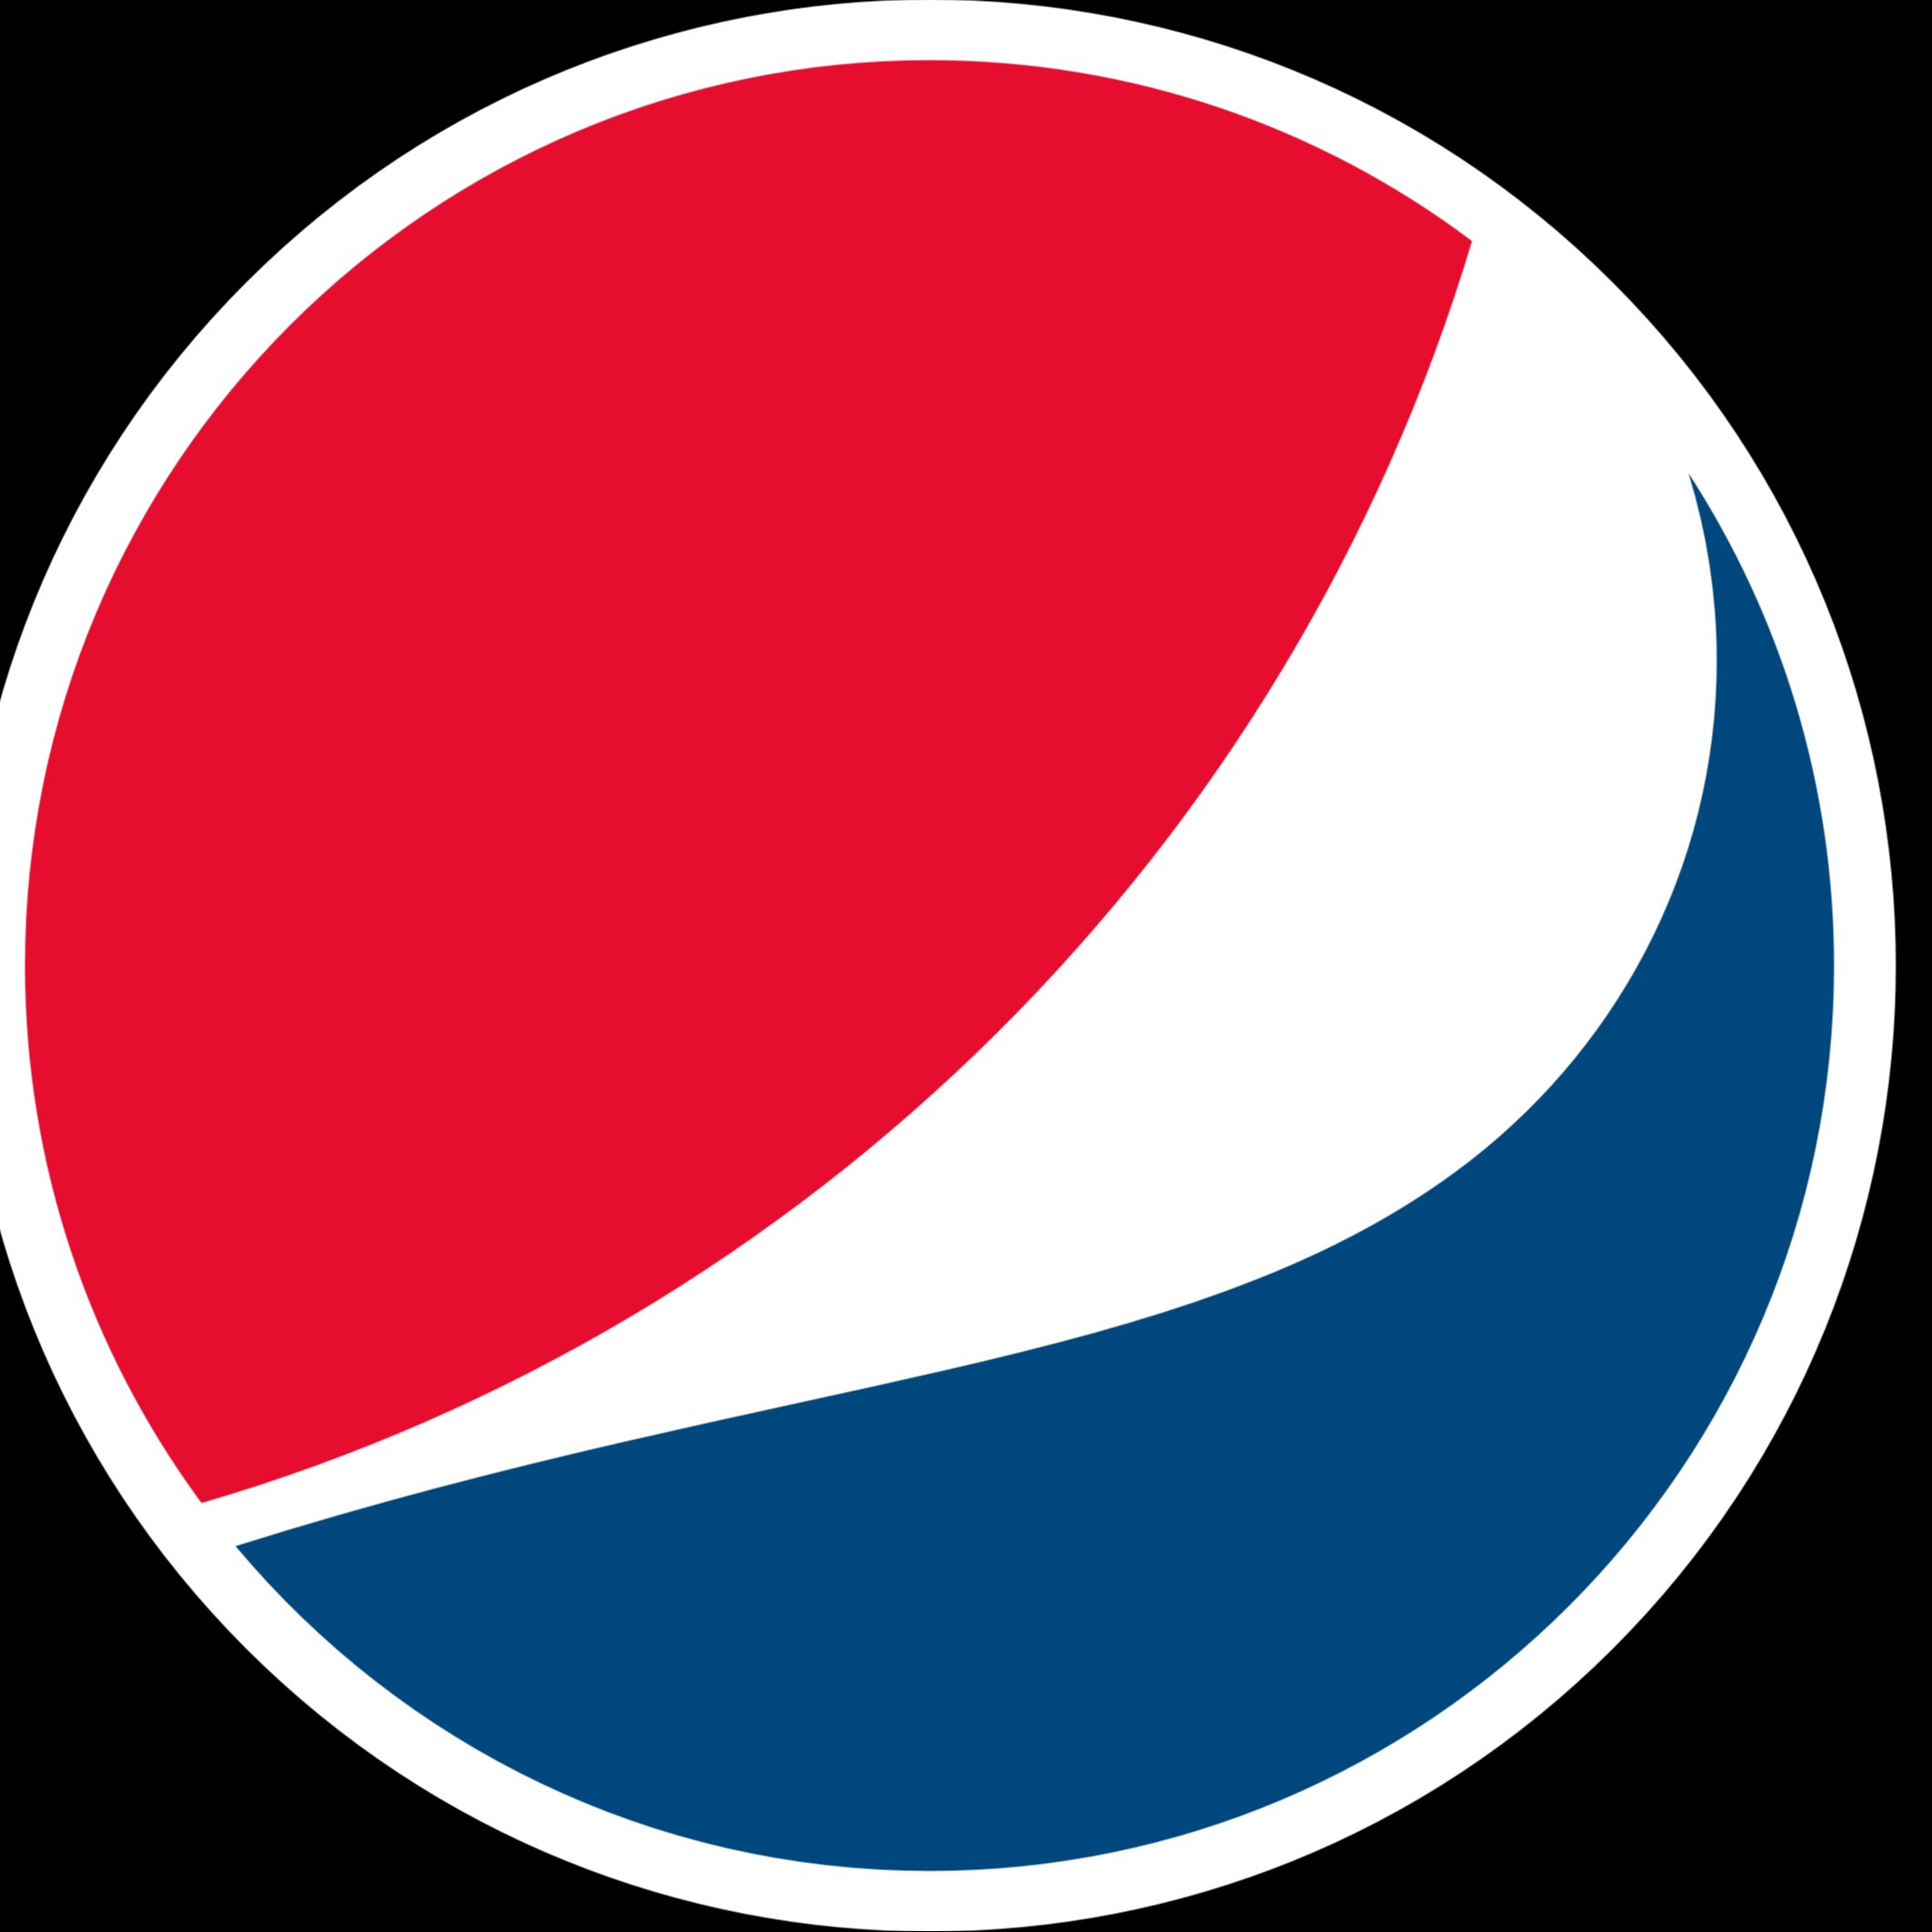 百事可乐logo字符图片